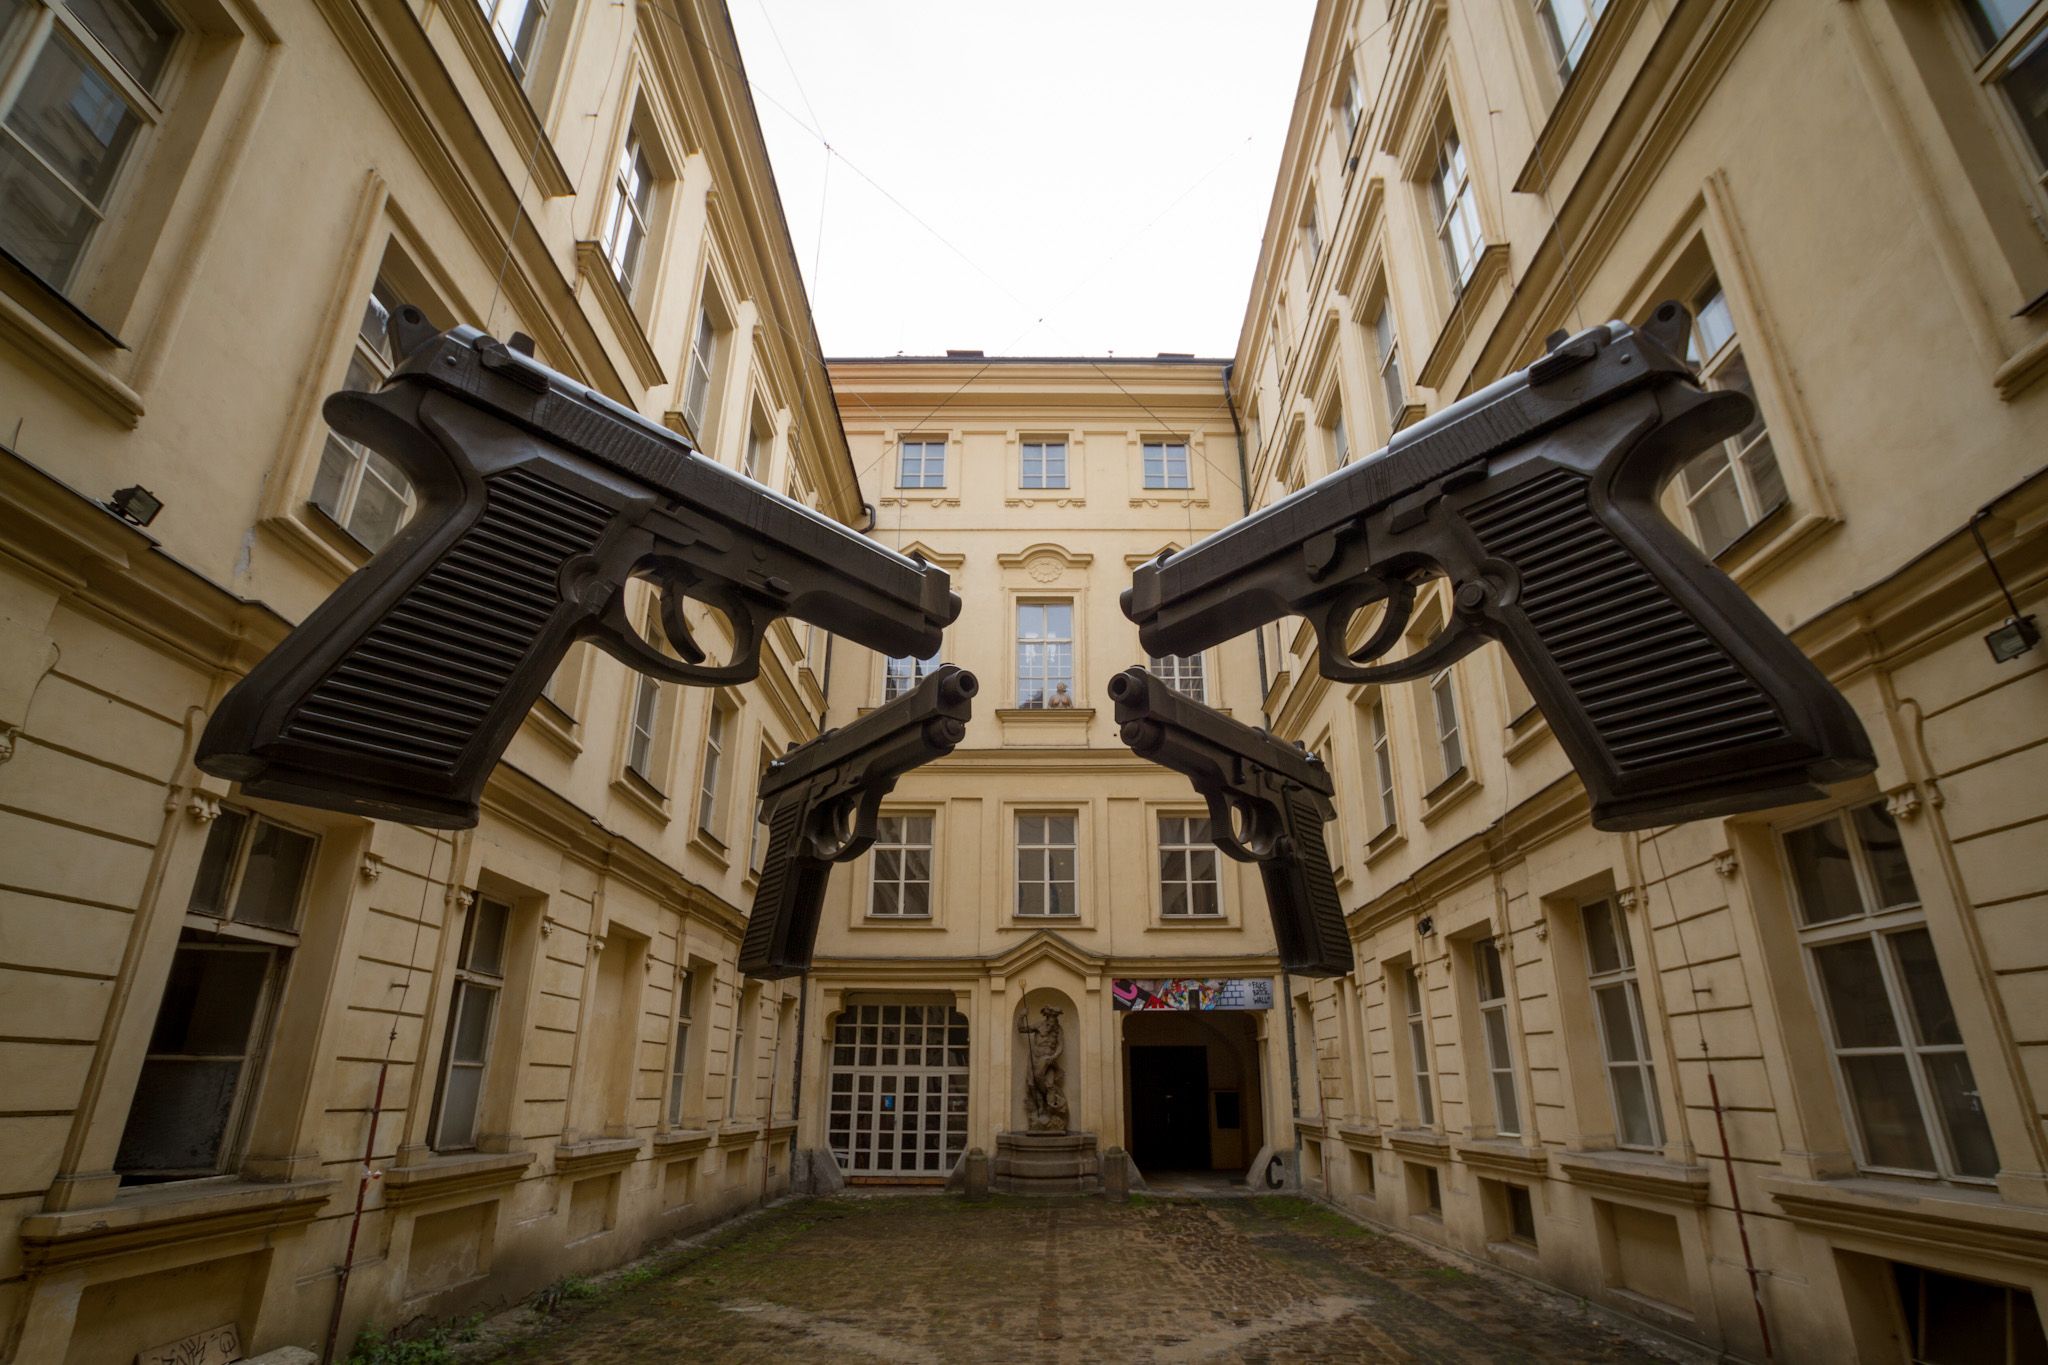 Арт-инсталляция "Оружие", представляющая собой четыре огромных пистолета Beretta 92, подвешенные в воздухе. Автор чешский художник Давида Чёрный, 2012 г.